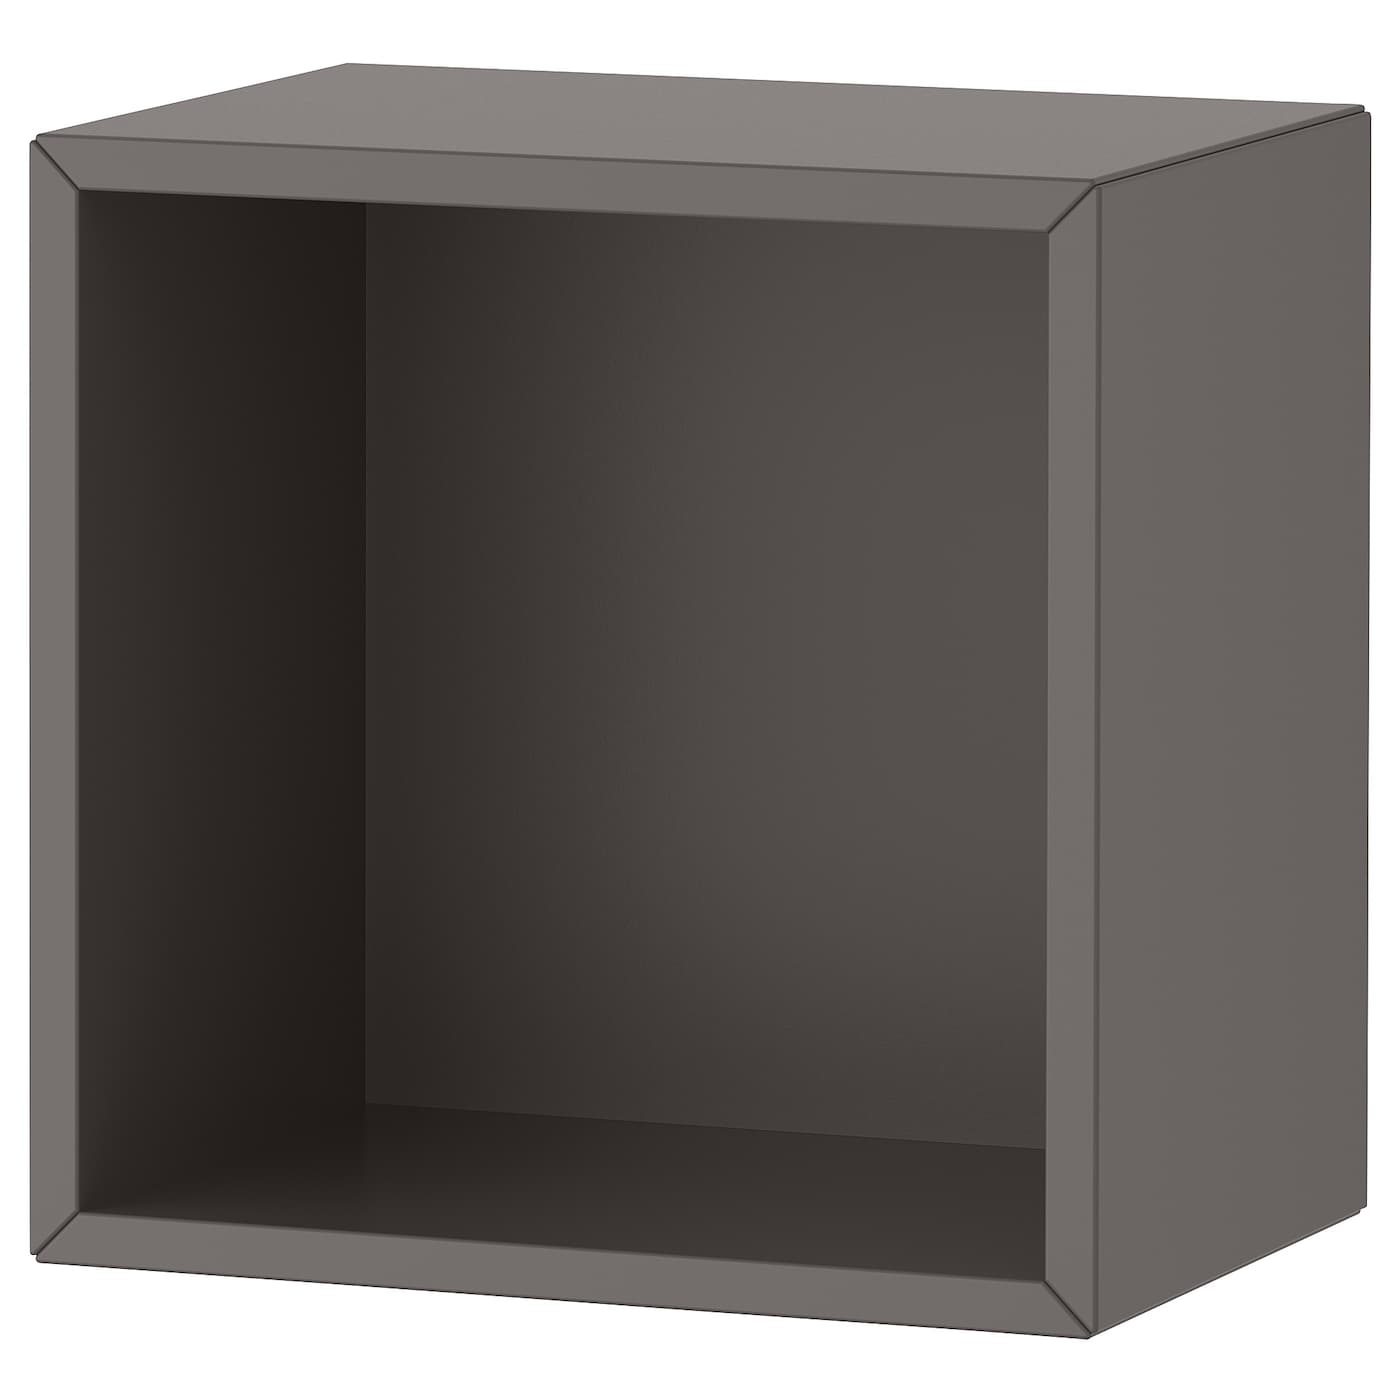 Стеллаж - IKEA EKET, 35x25x35 см, темно-серый, ЭКЕТ ИКЕА